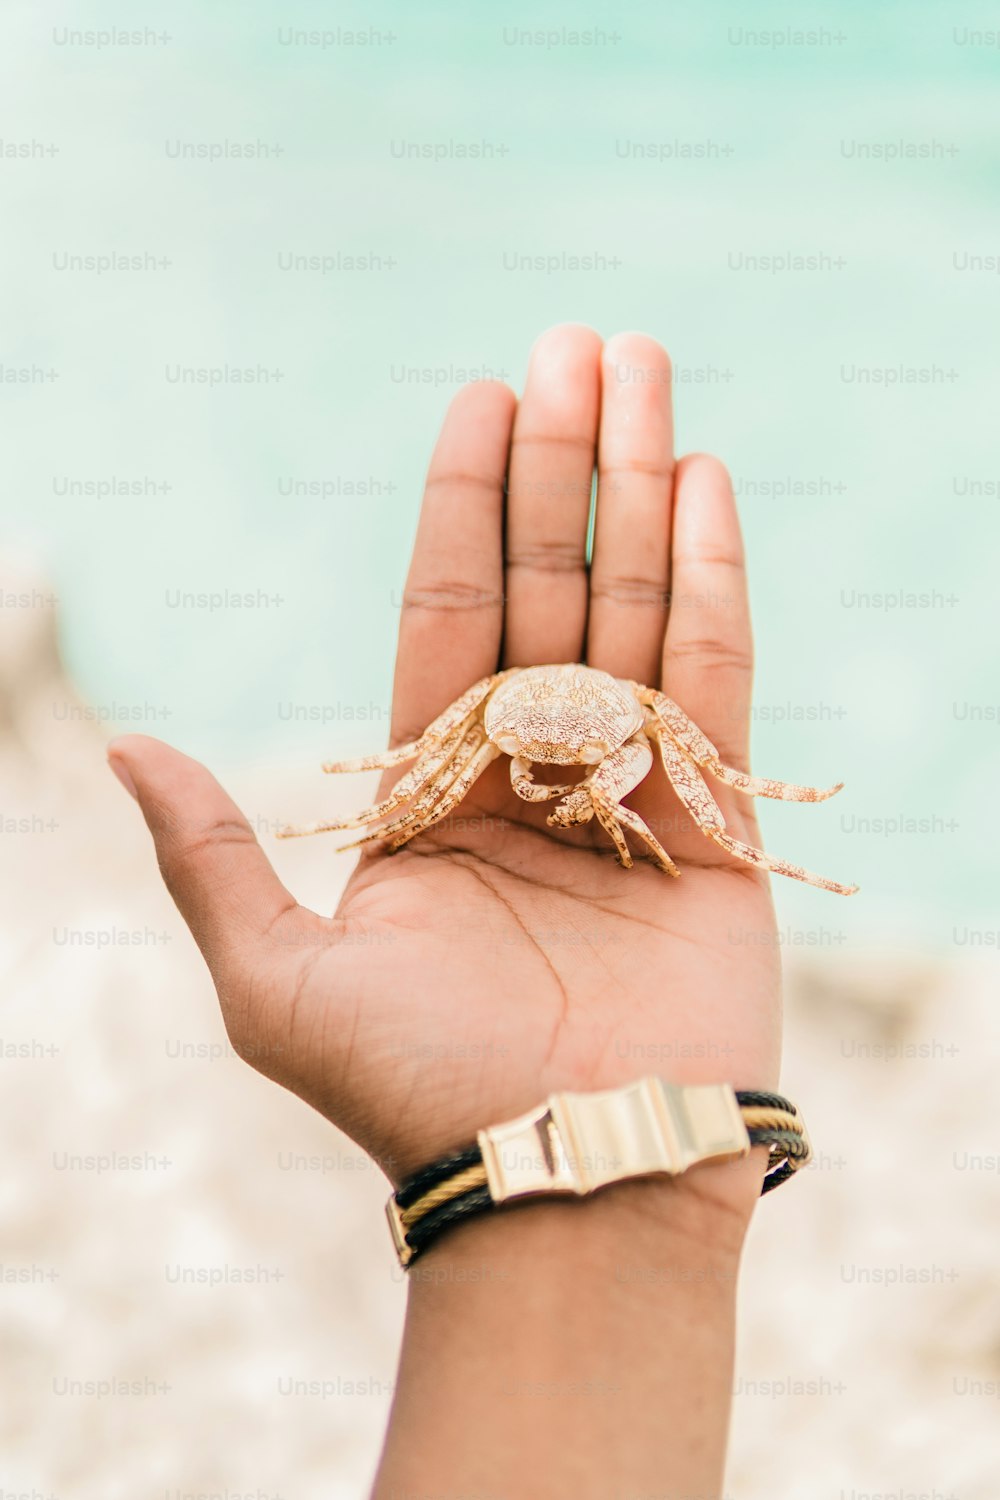 una persona sosteniendo un pequeño cangrejo en la mano